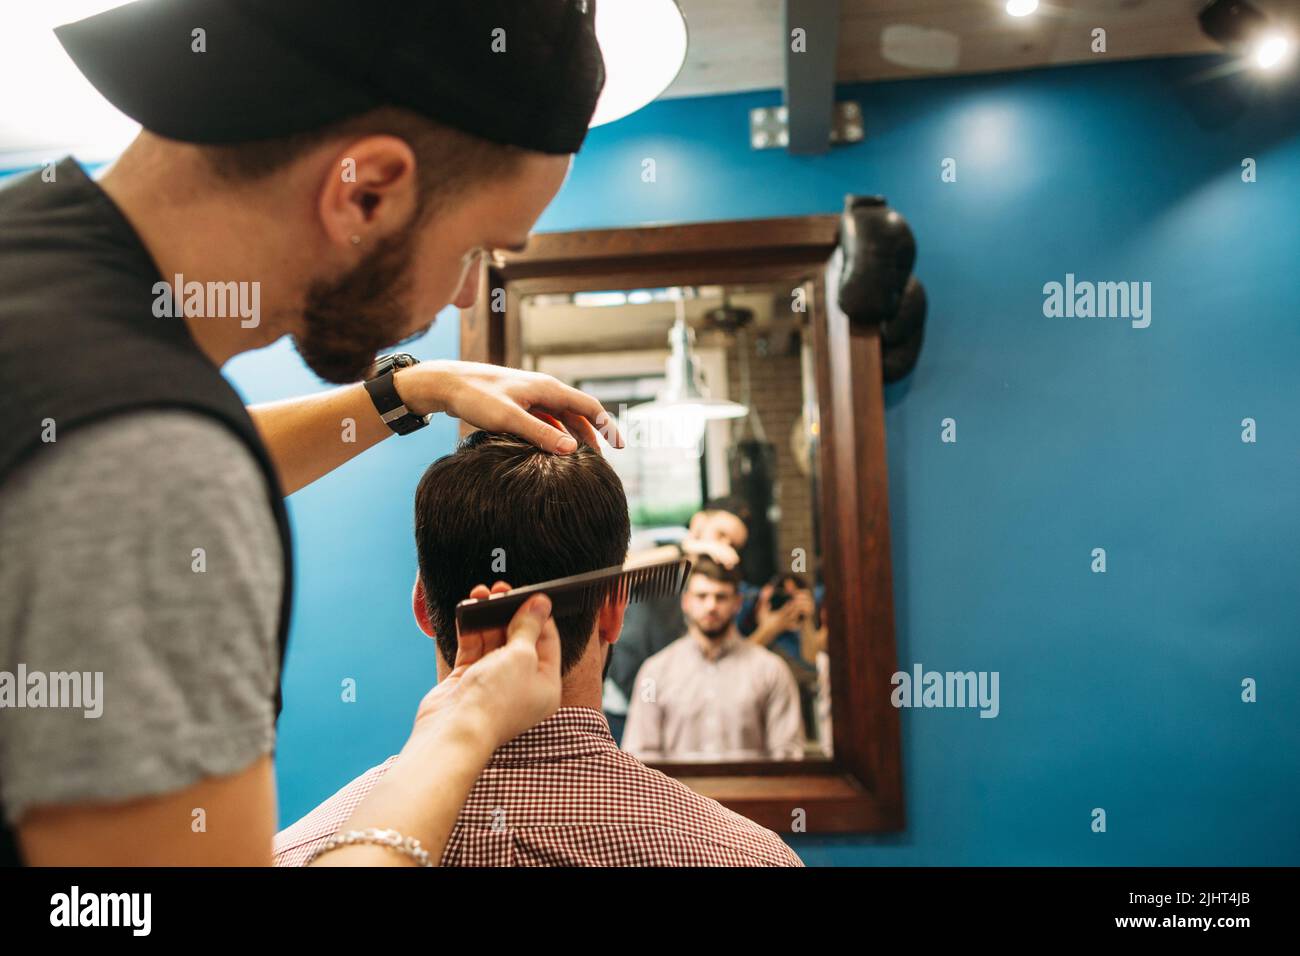 Un jeune styliste coupe le client dans l'espace libre du miroir Banque D'Images